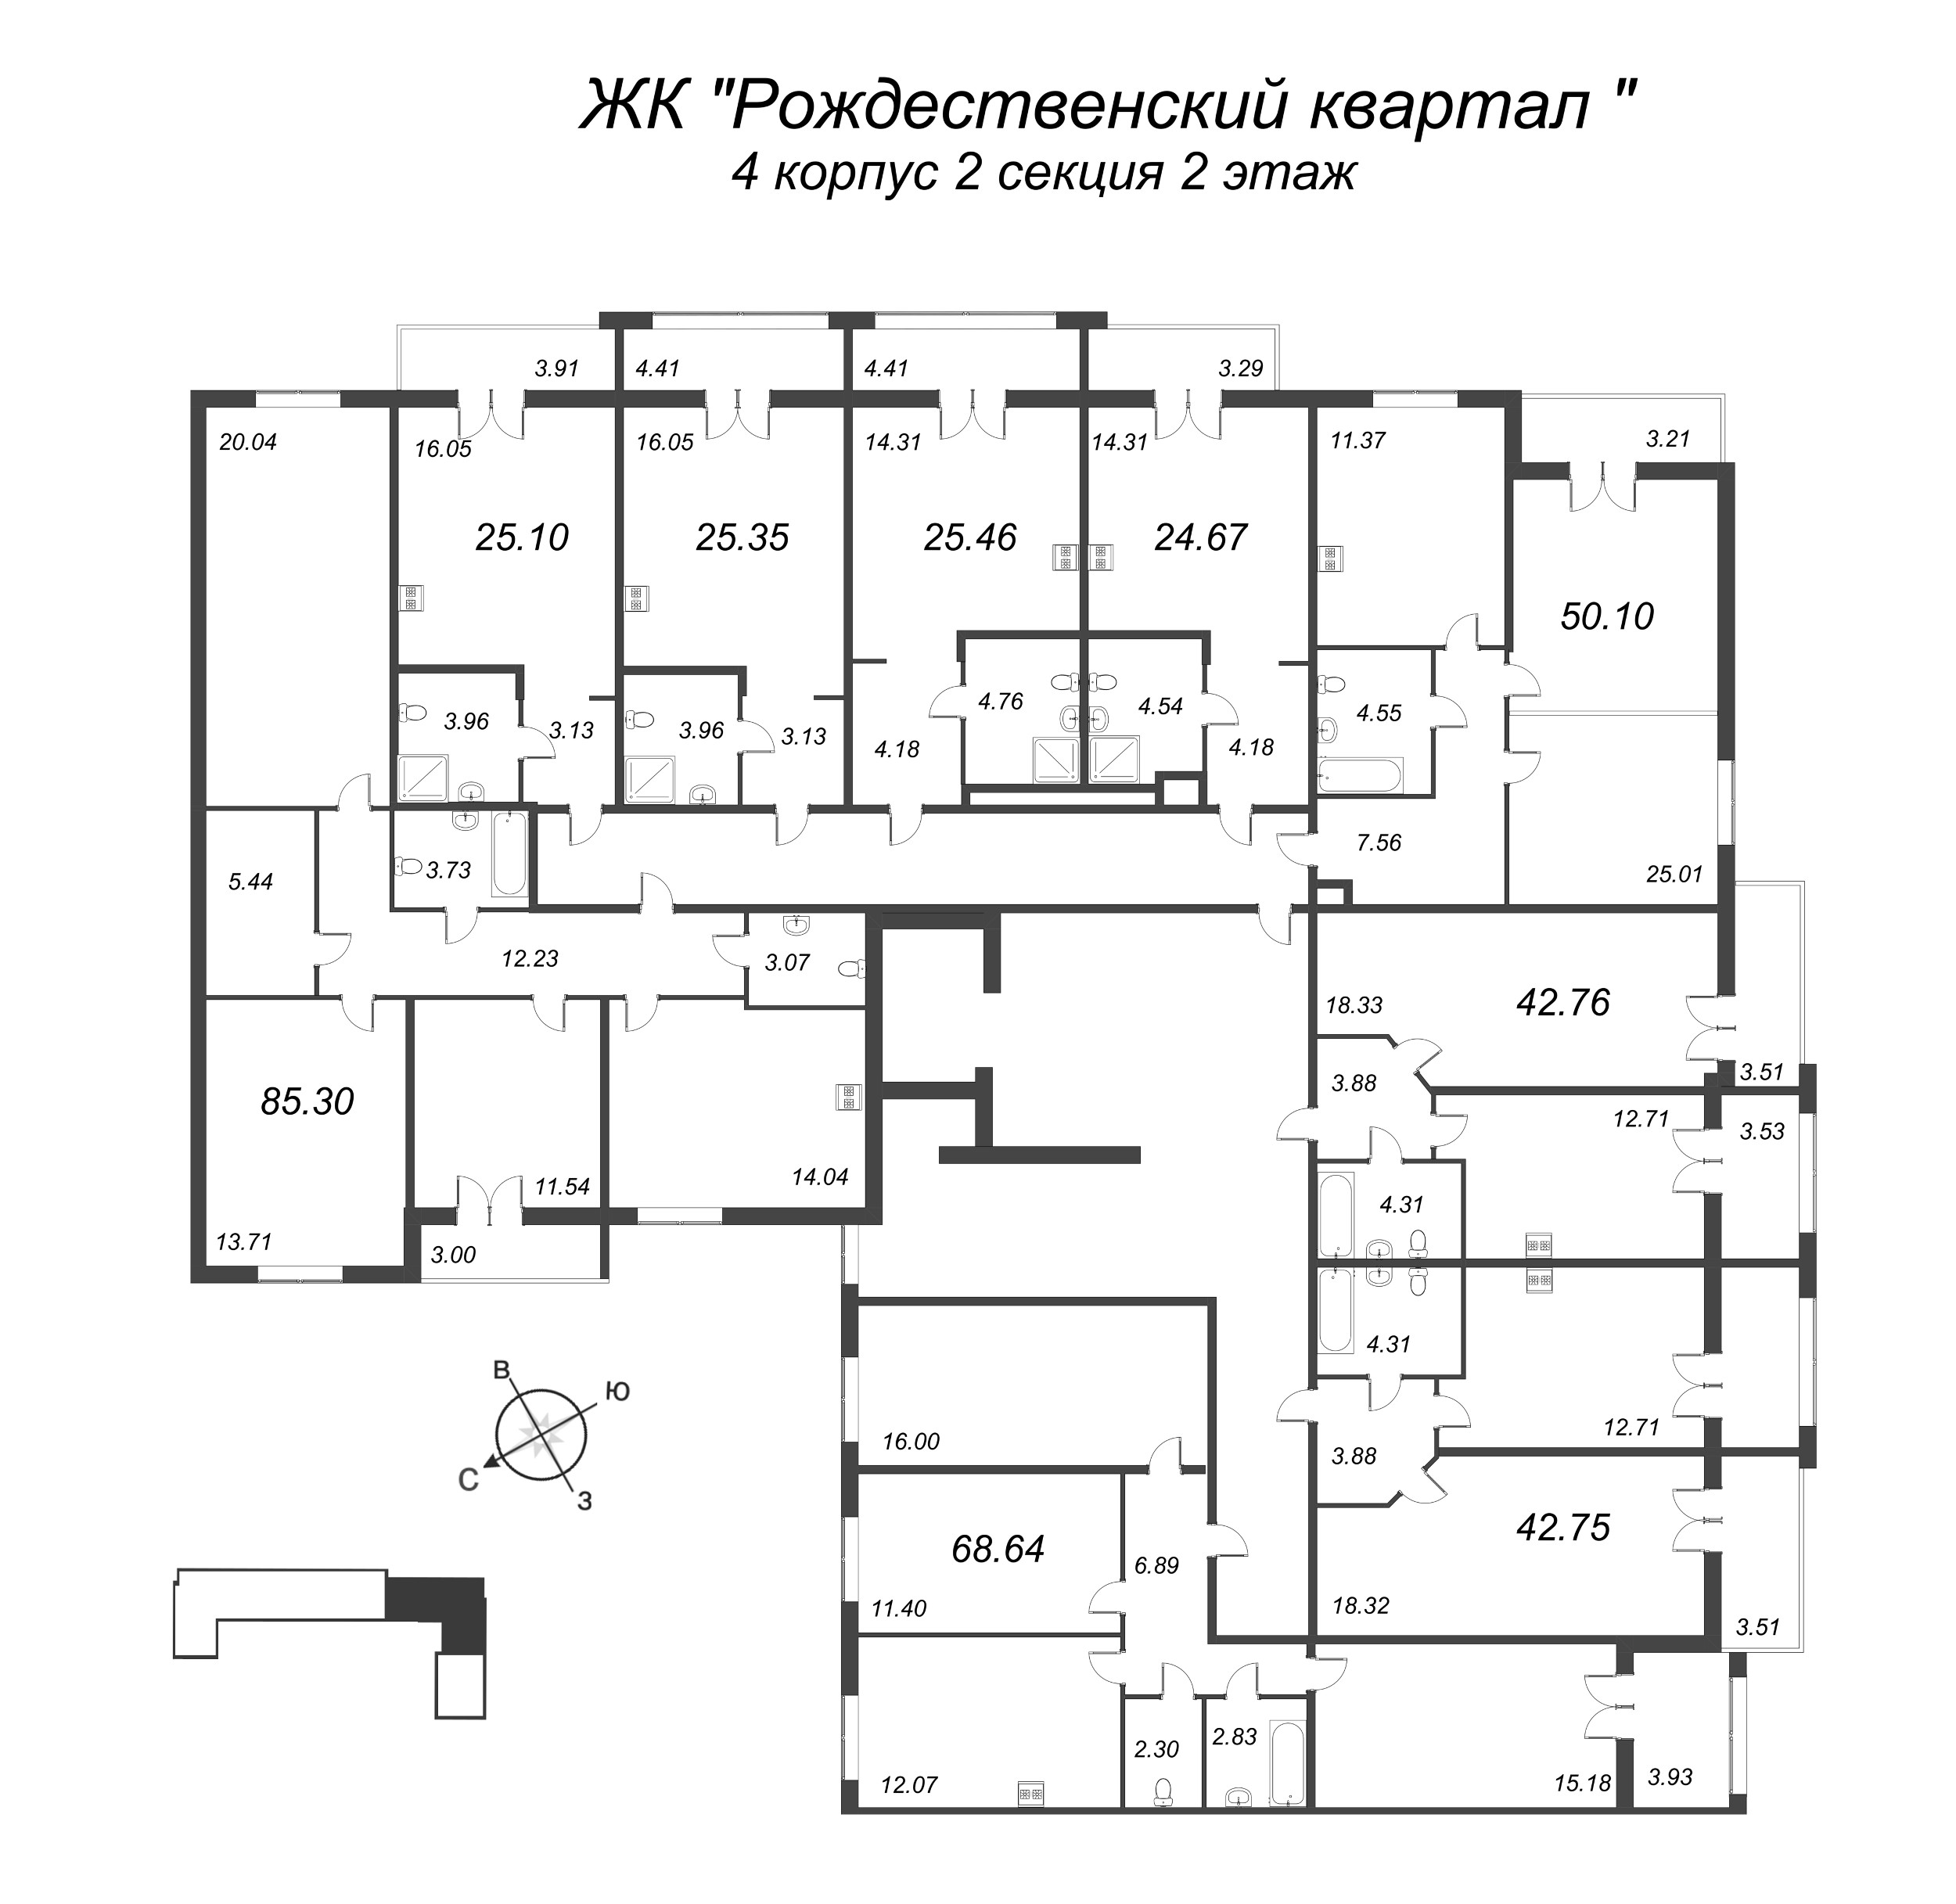 3-комнатная квартира, 68.64 м² в ЖК "Рождественский квартал" - планировка этажа